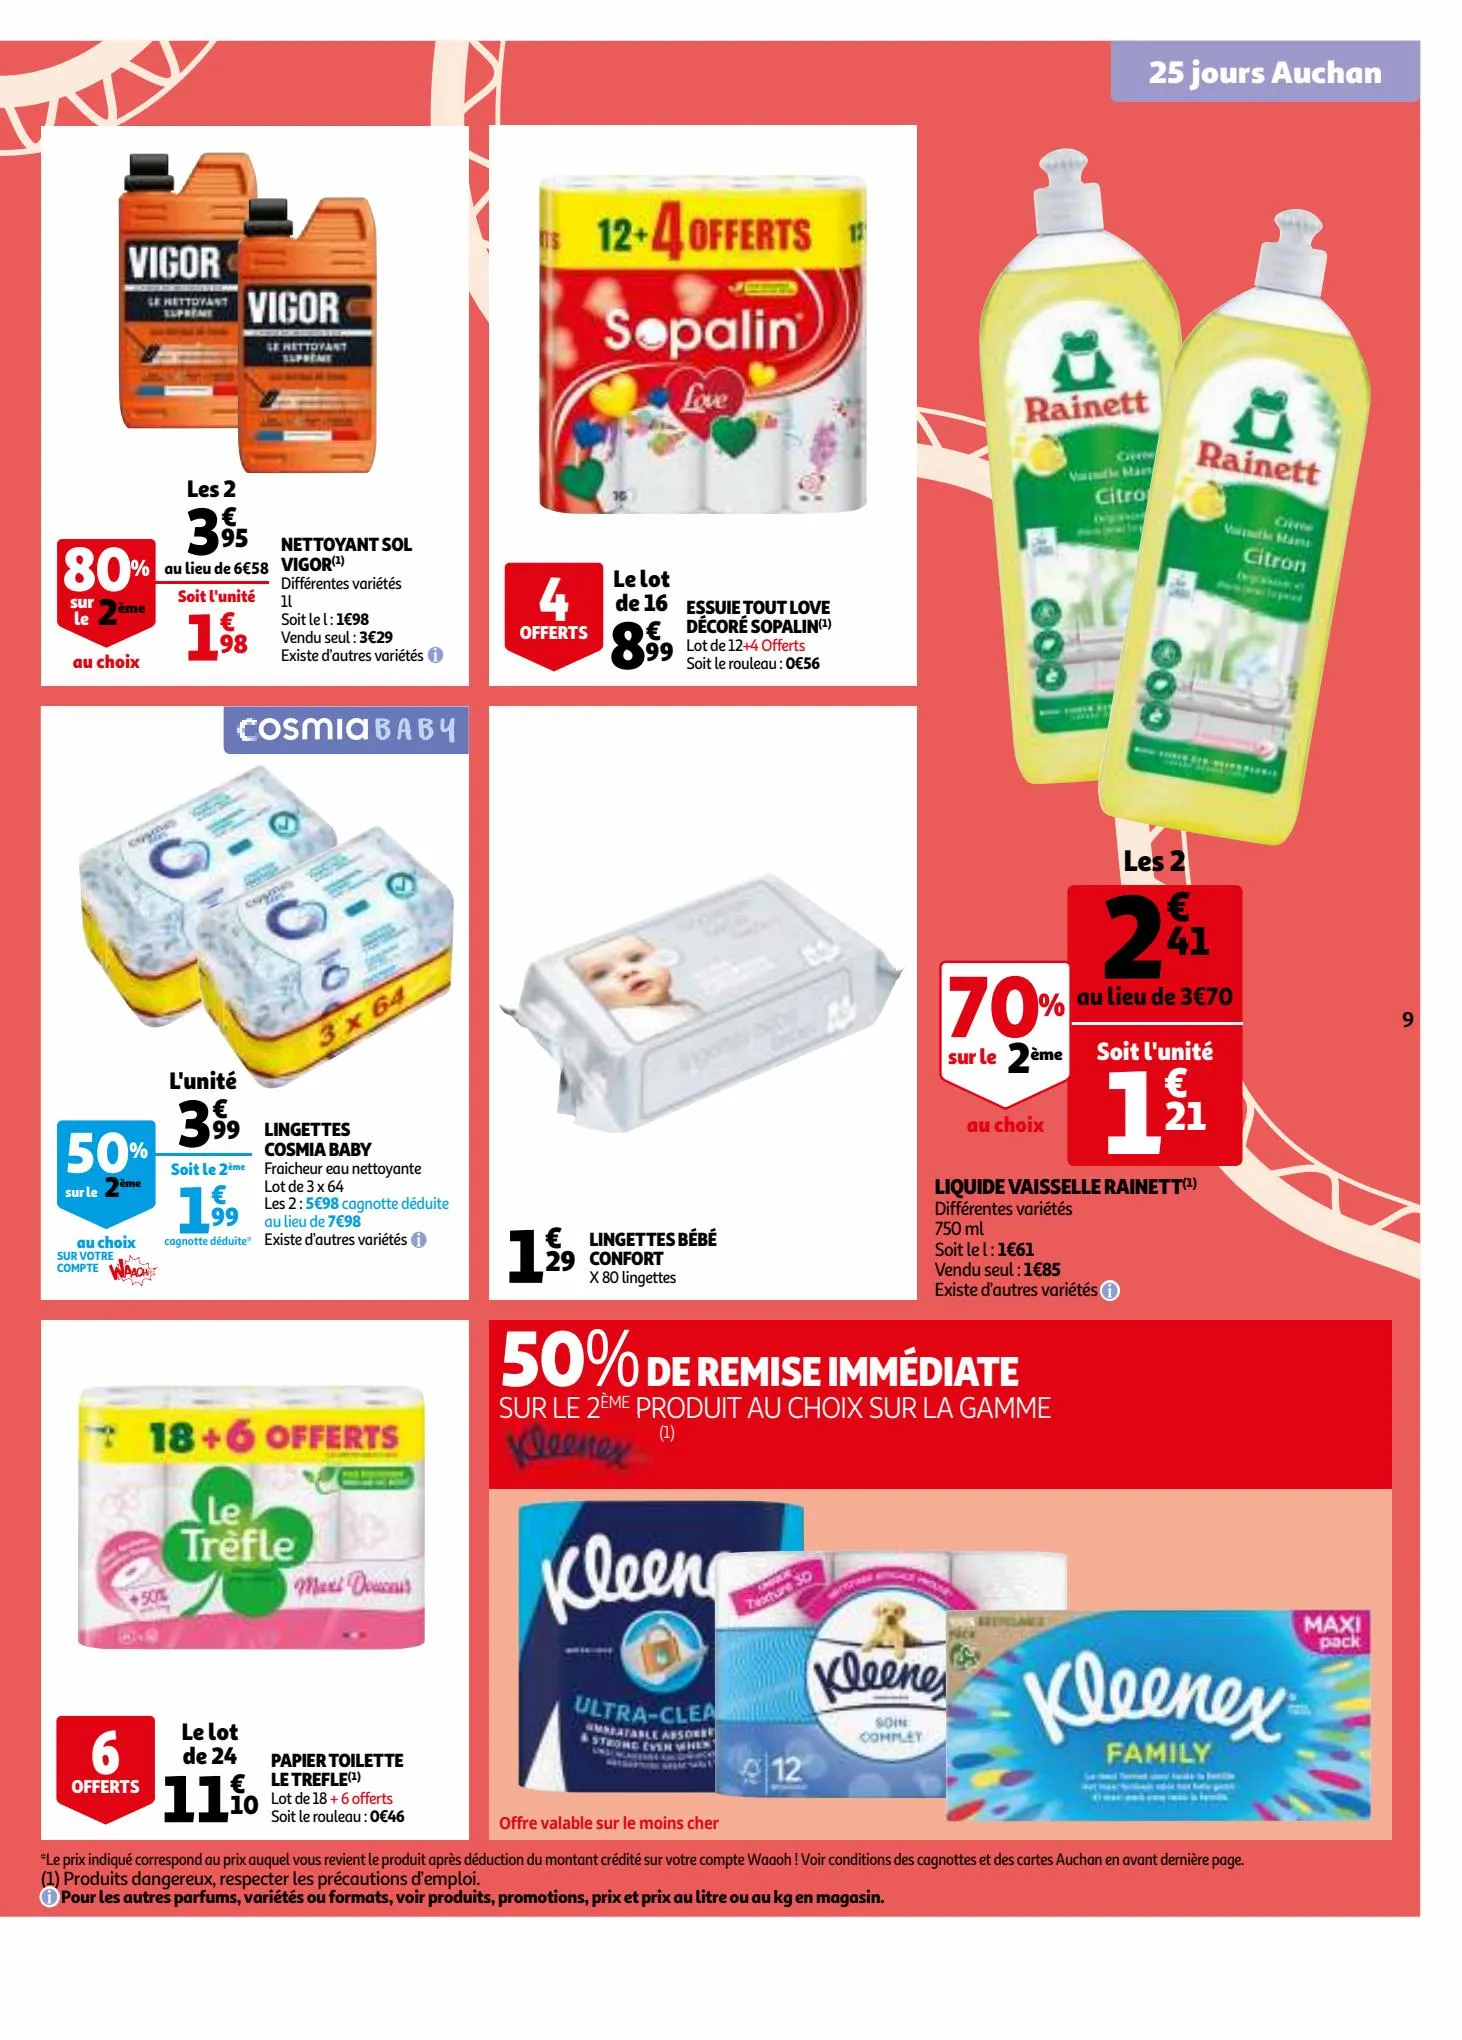 Catalogue 25 jours Auchan, page 00009